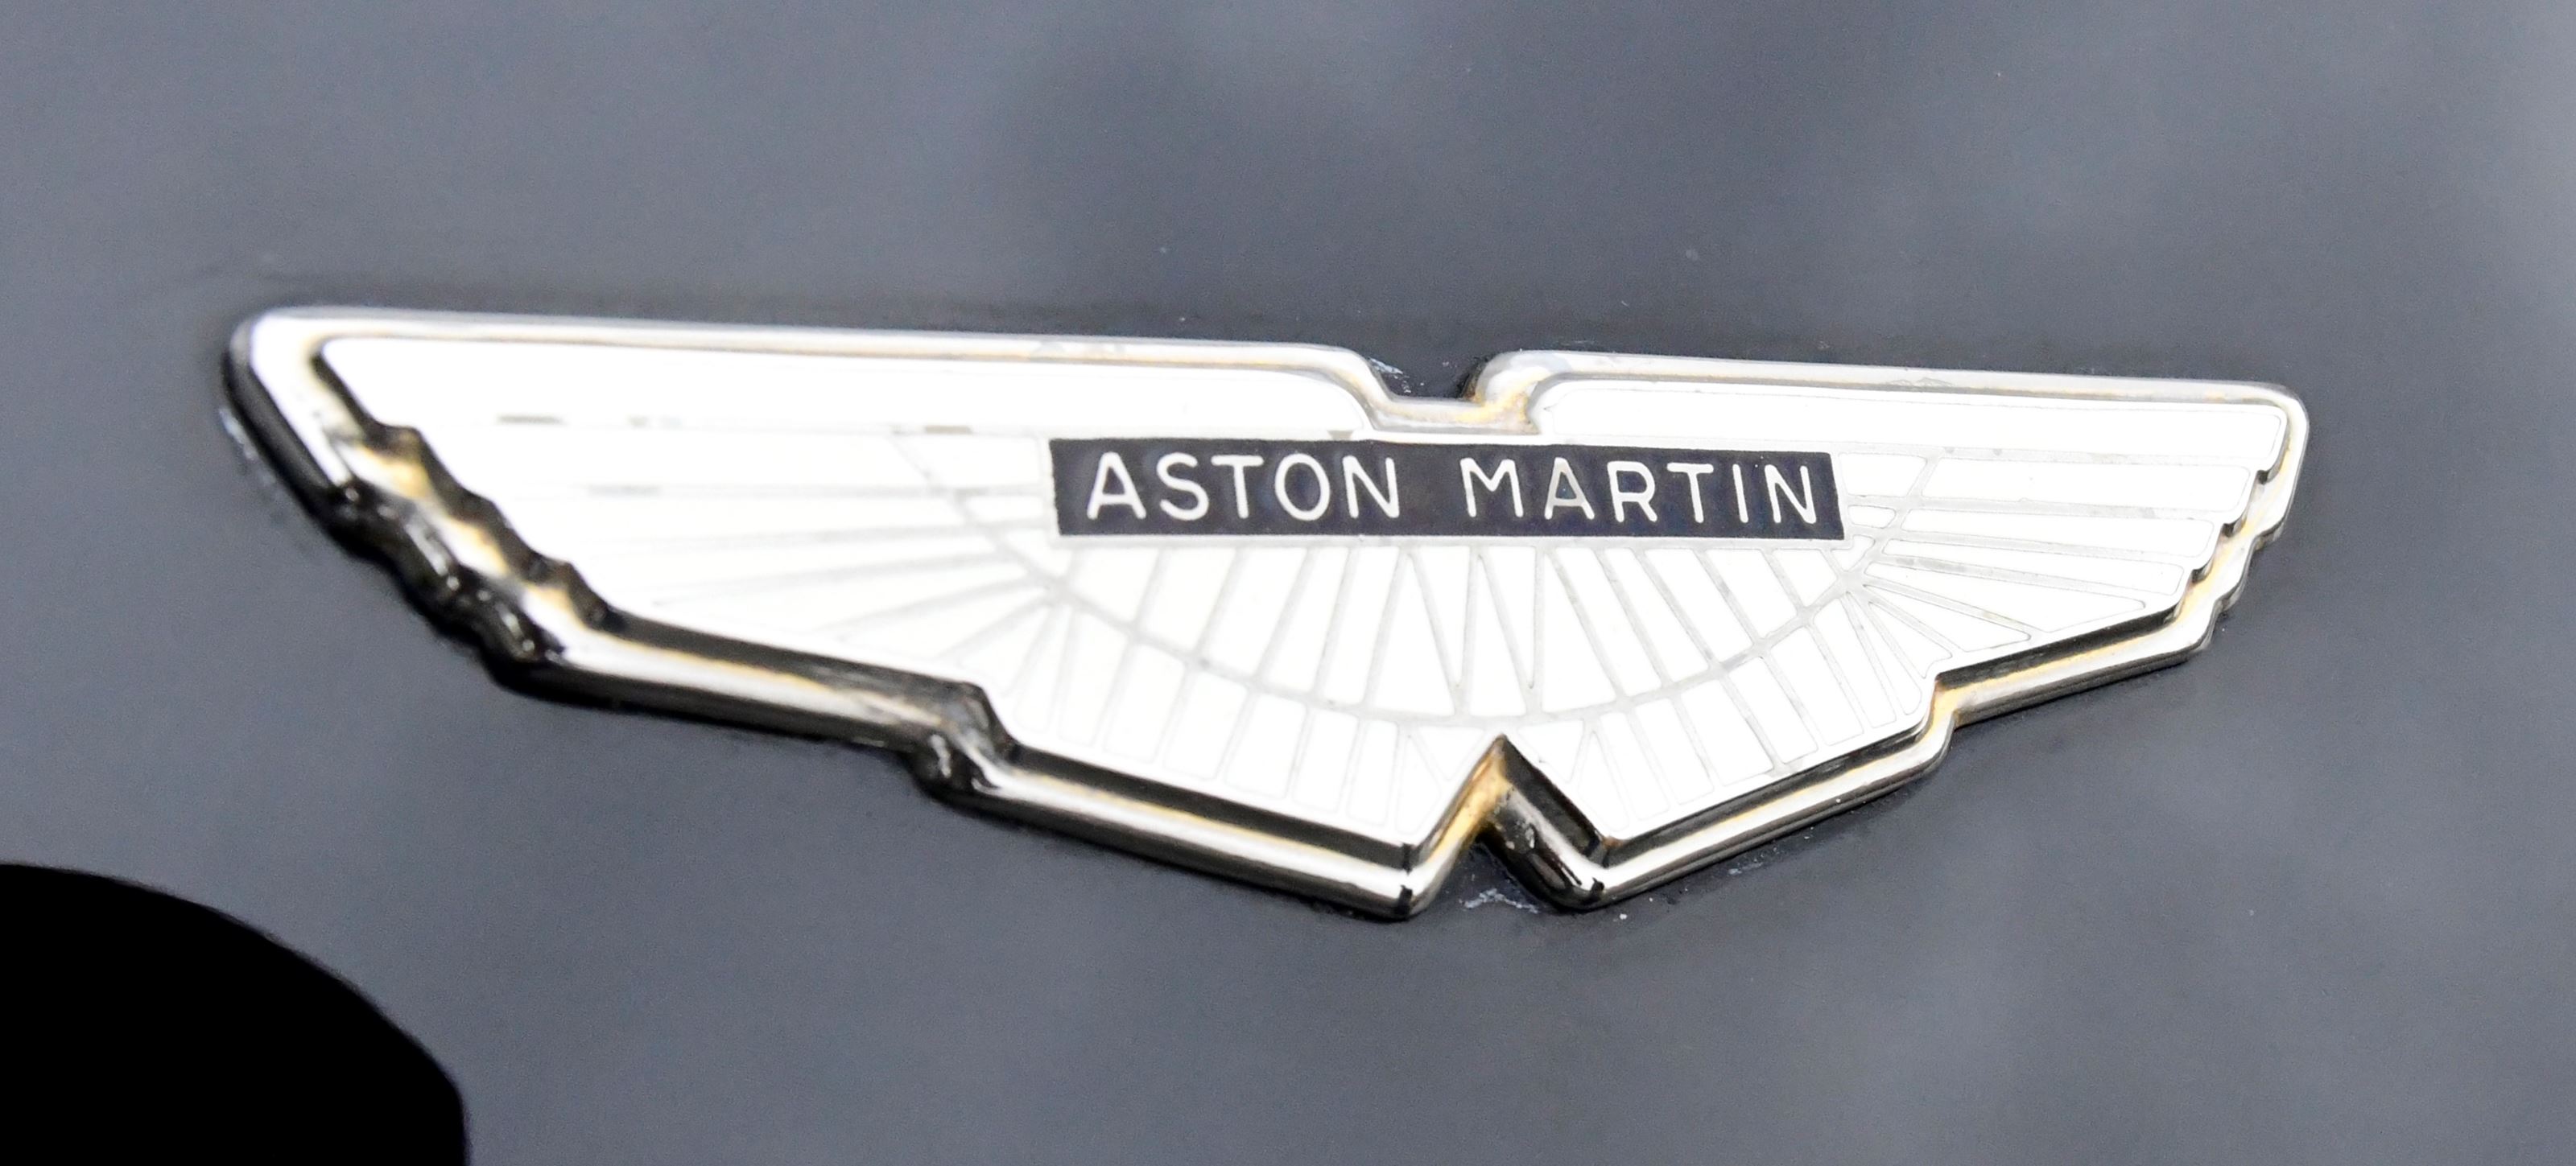 Aston martin v8  volante left hand drive automatic  3nrfhu745cxvm ahkh6sy